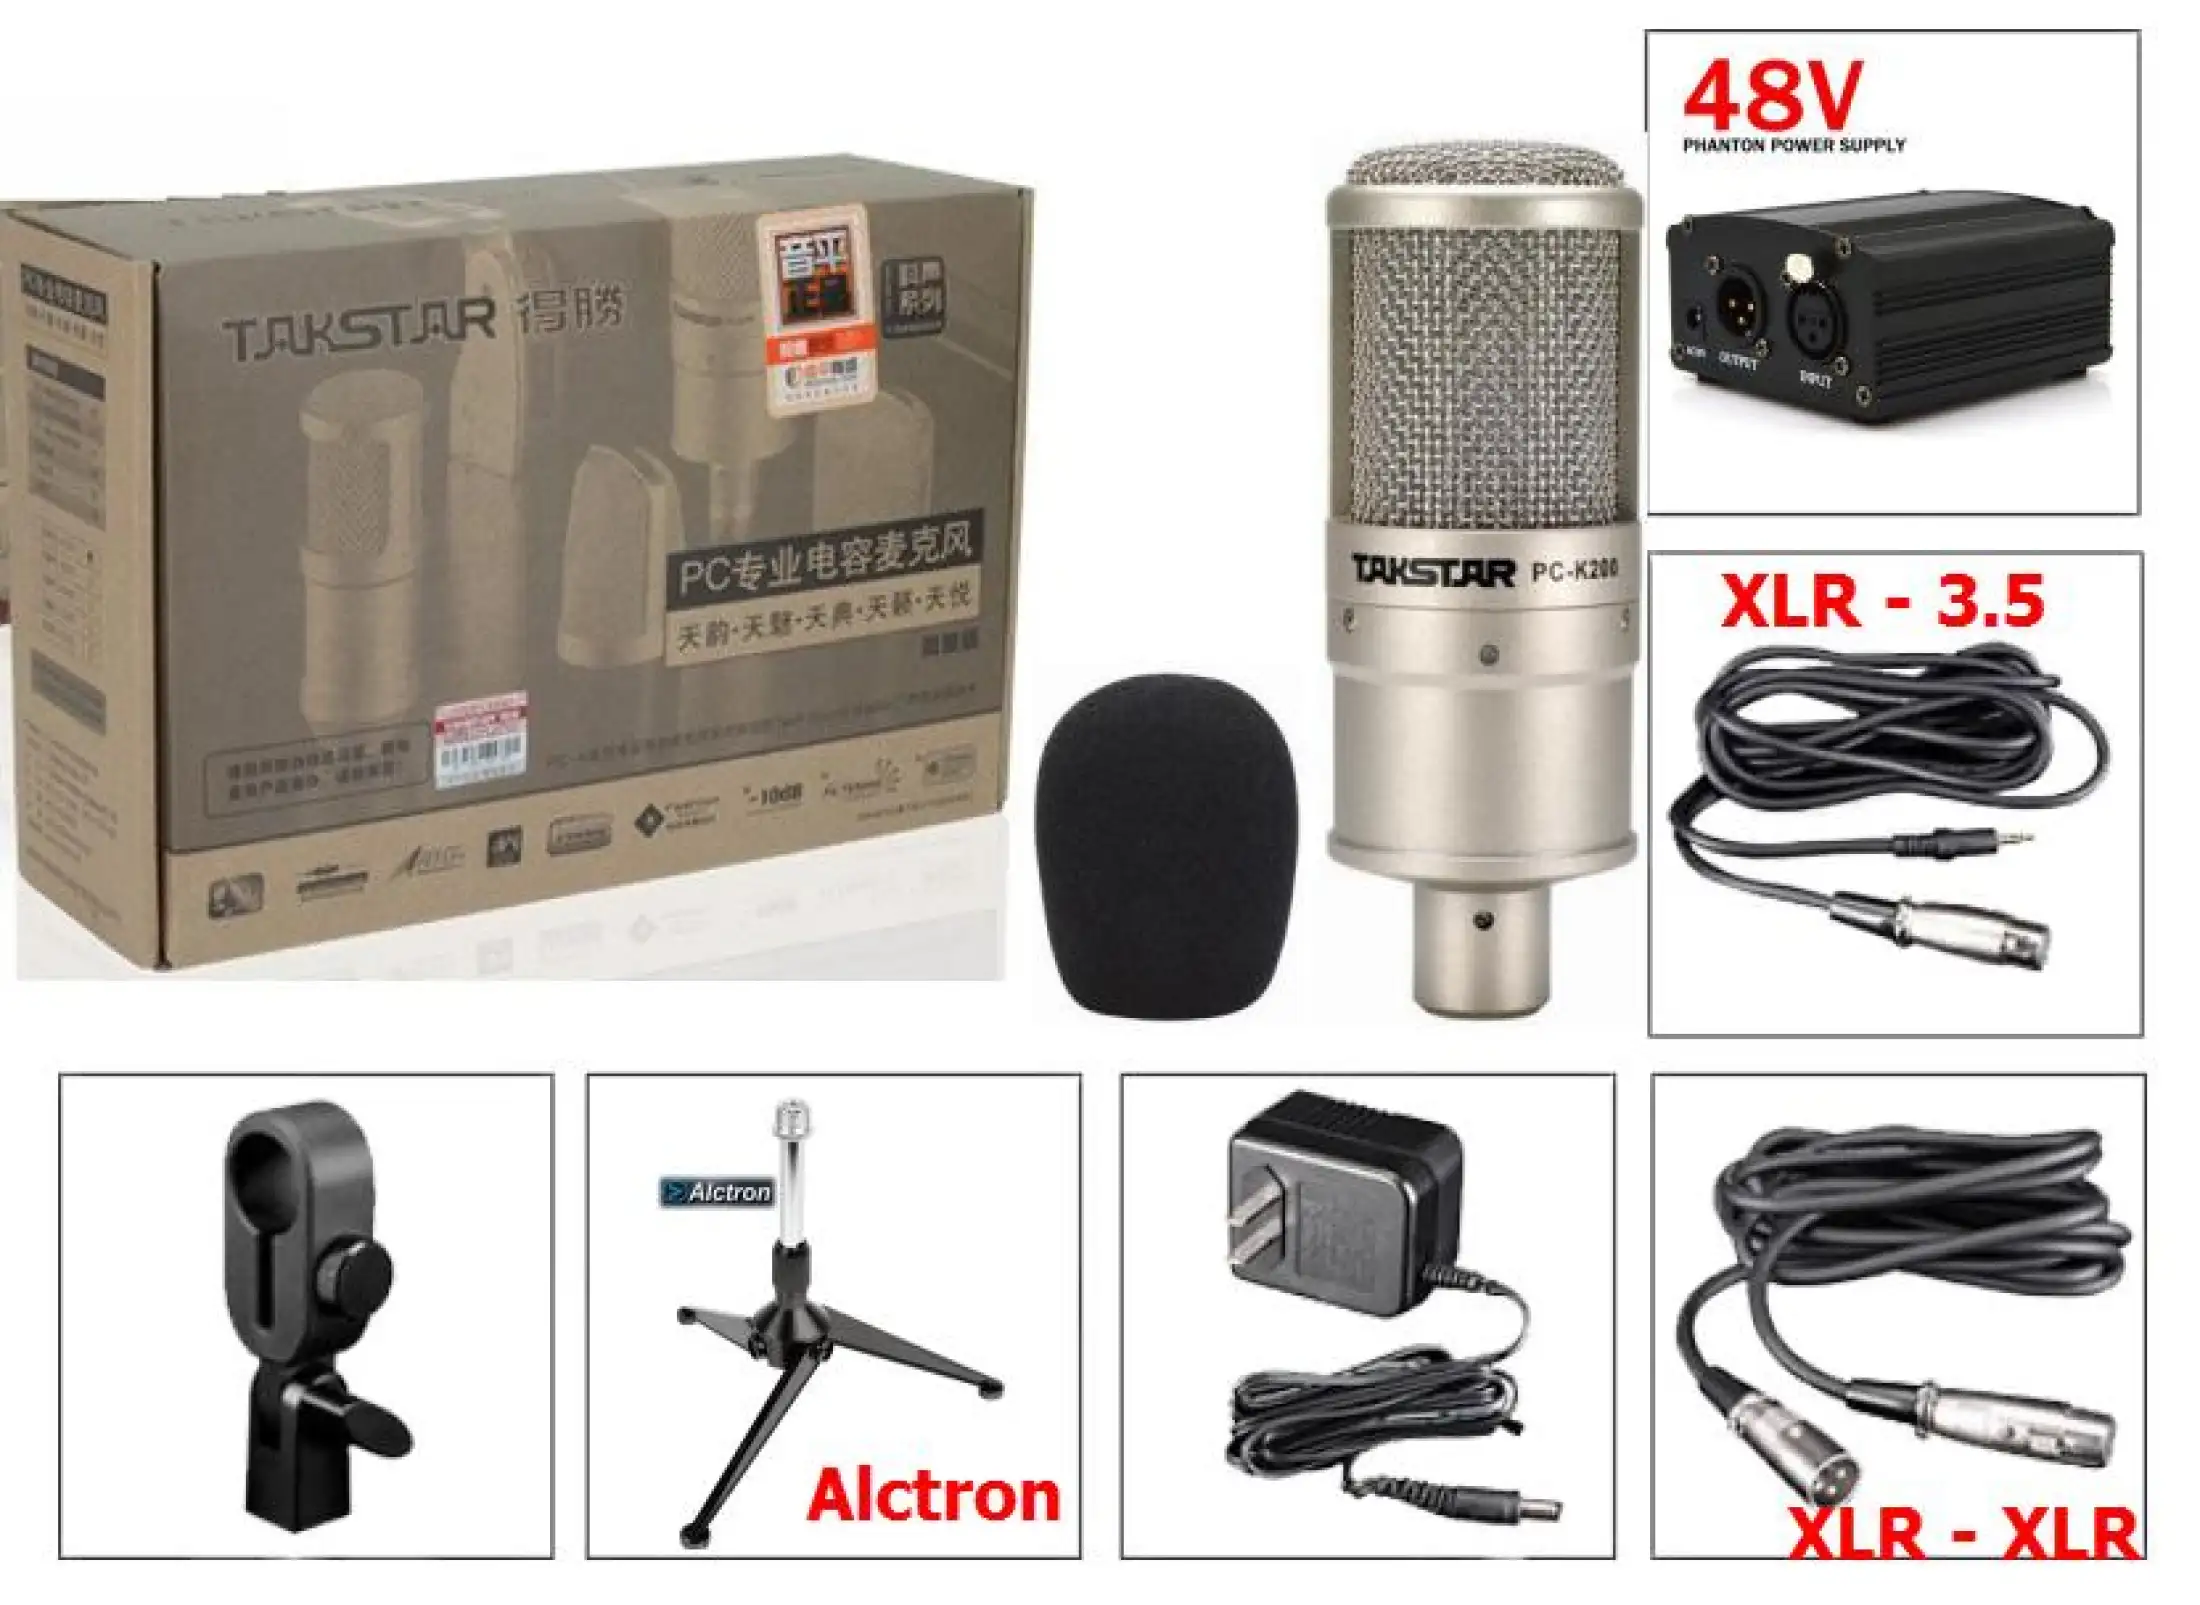 Bộ Micro Takstar PC K200 kết hợp với Sound Card XOX K10 - Hát Karaoke